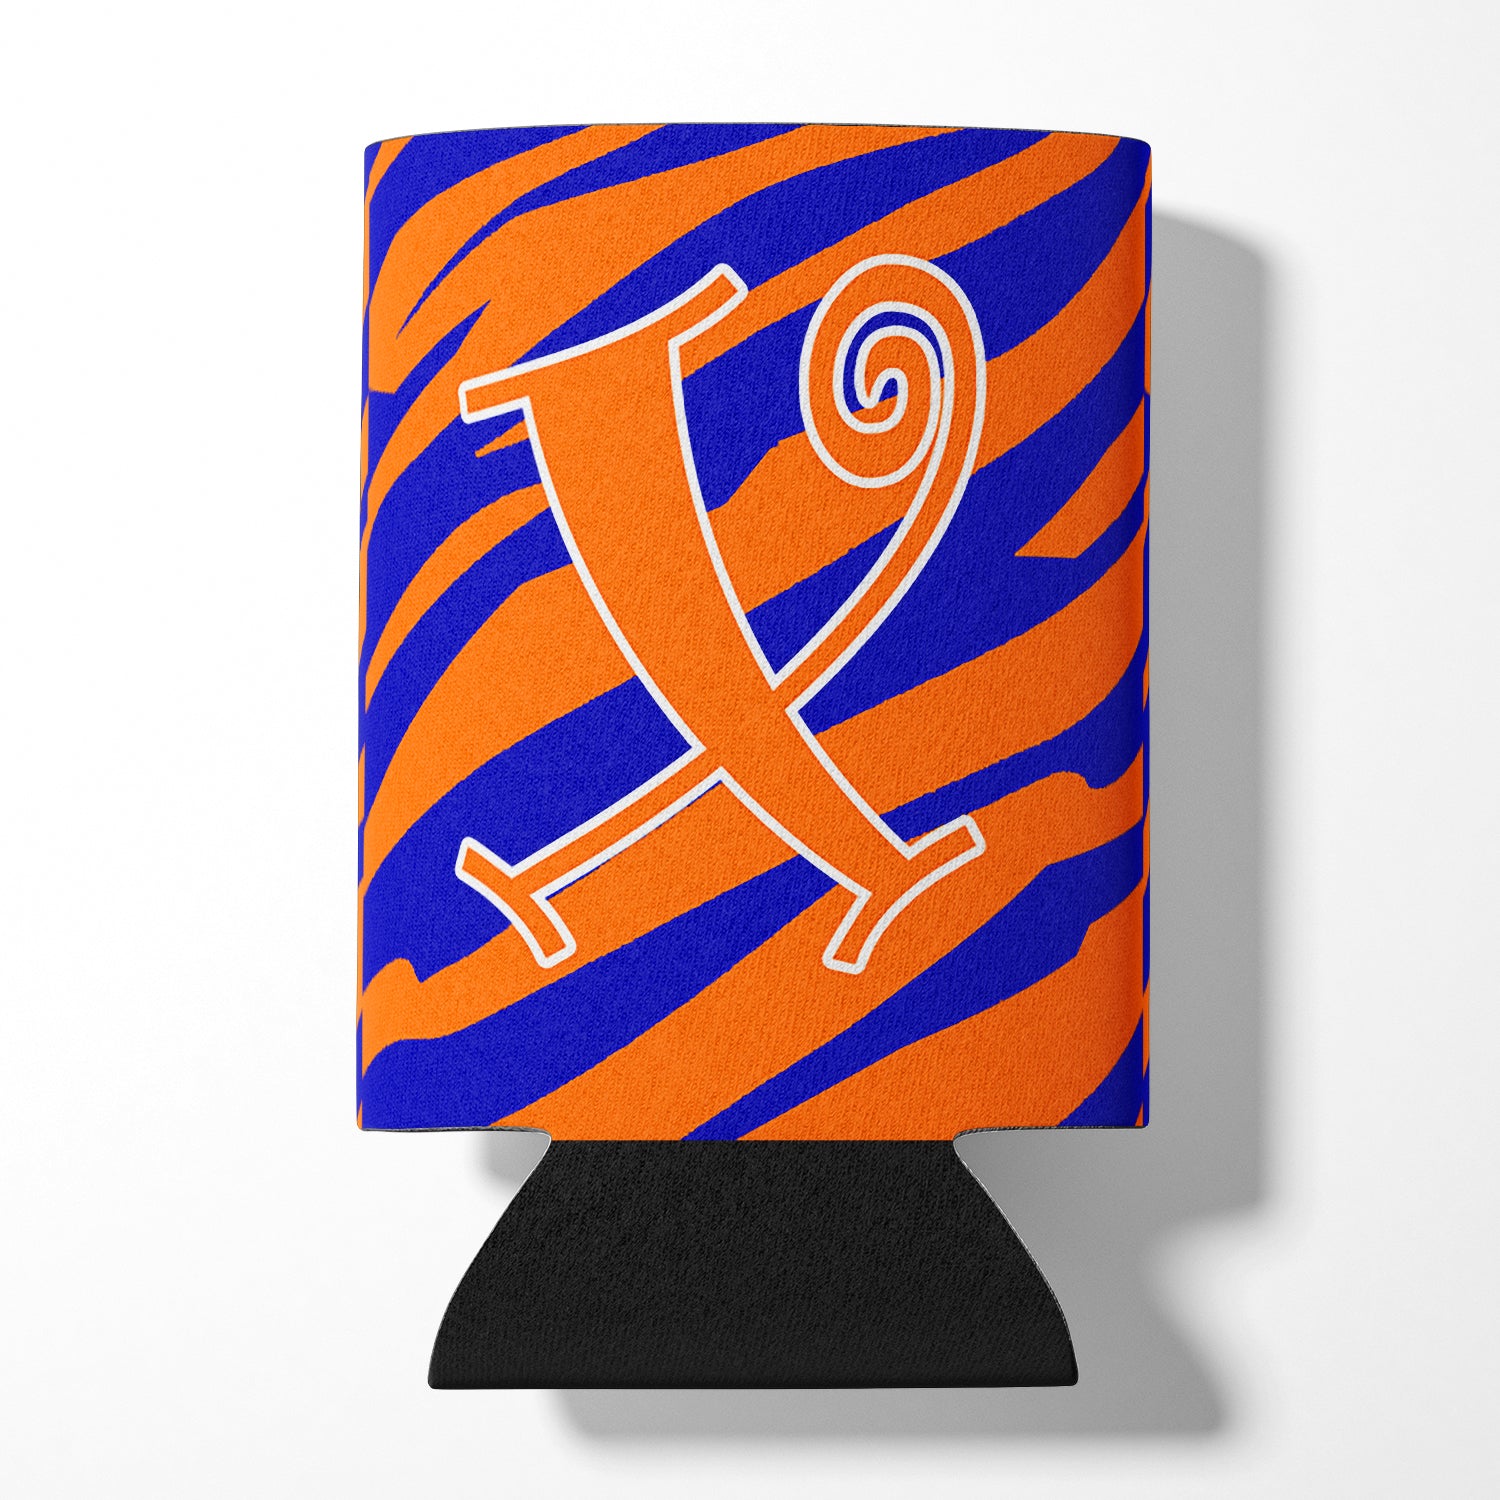 Letter X Initial Monogram - Tiger Stripe Blue and Orange Can Beverage Insulator Hugger.